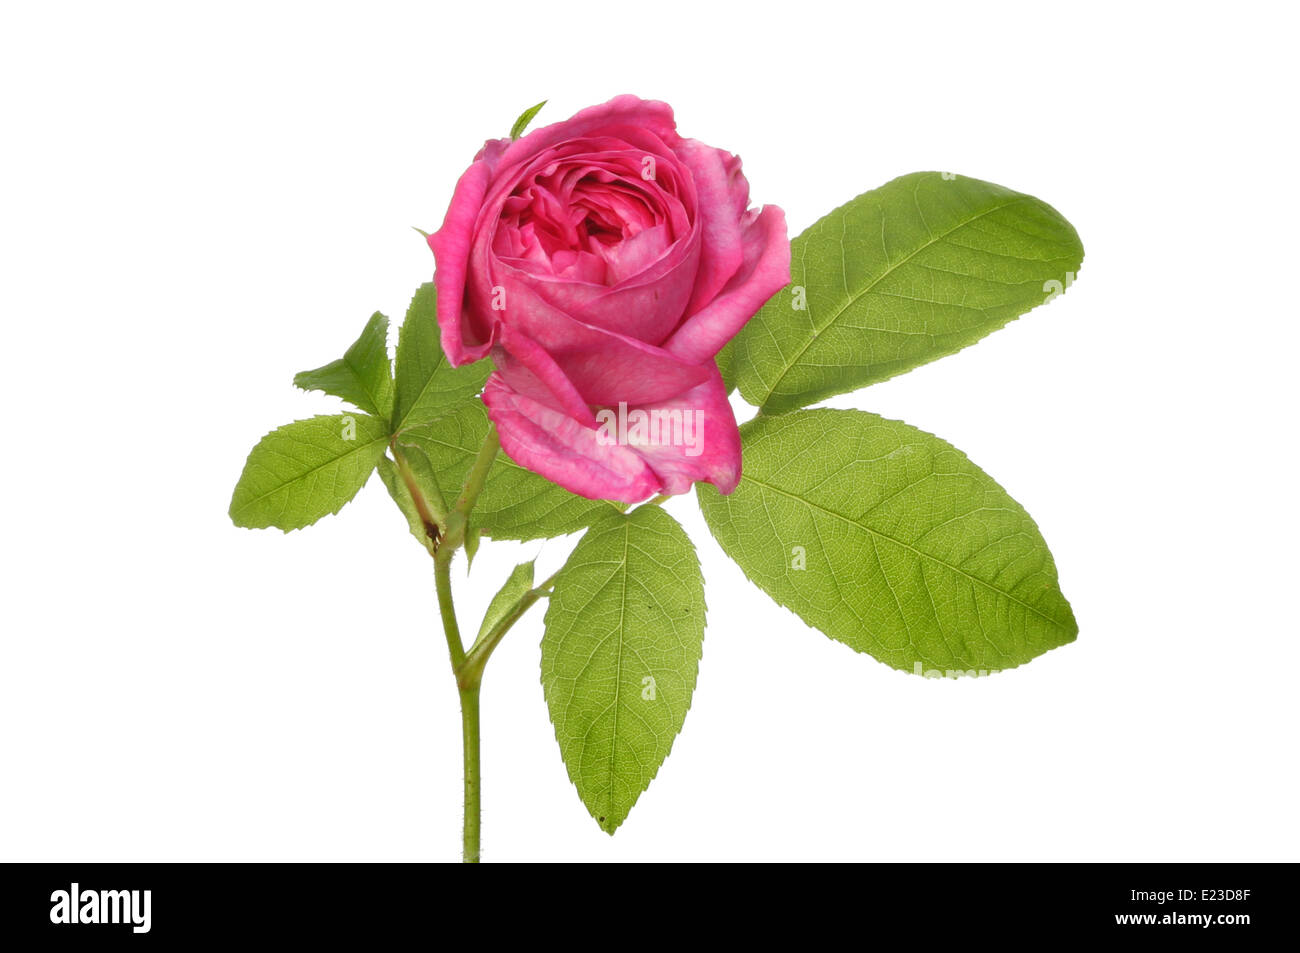 Rosa magenta de flores y follaje contra un blanco aislado Foto de stock